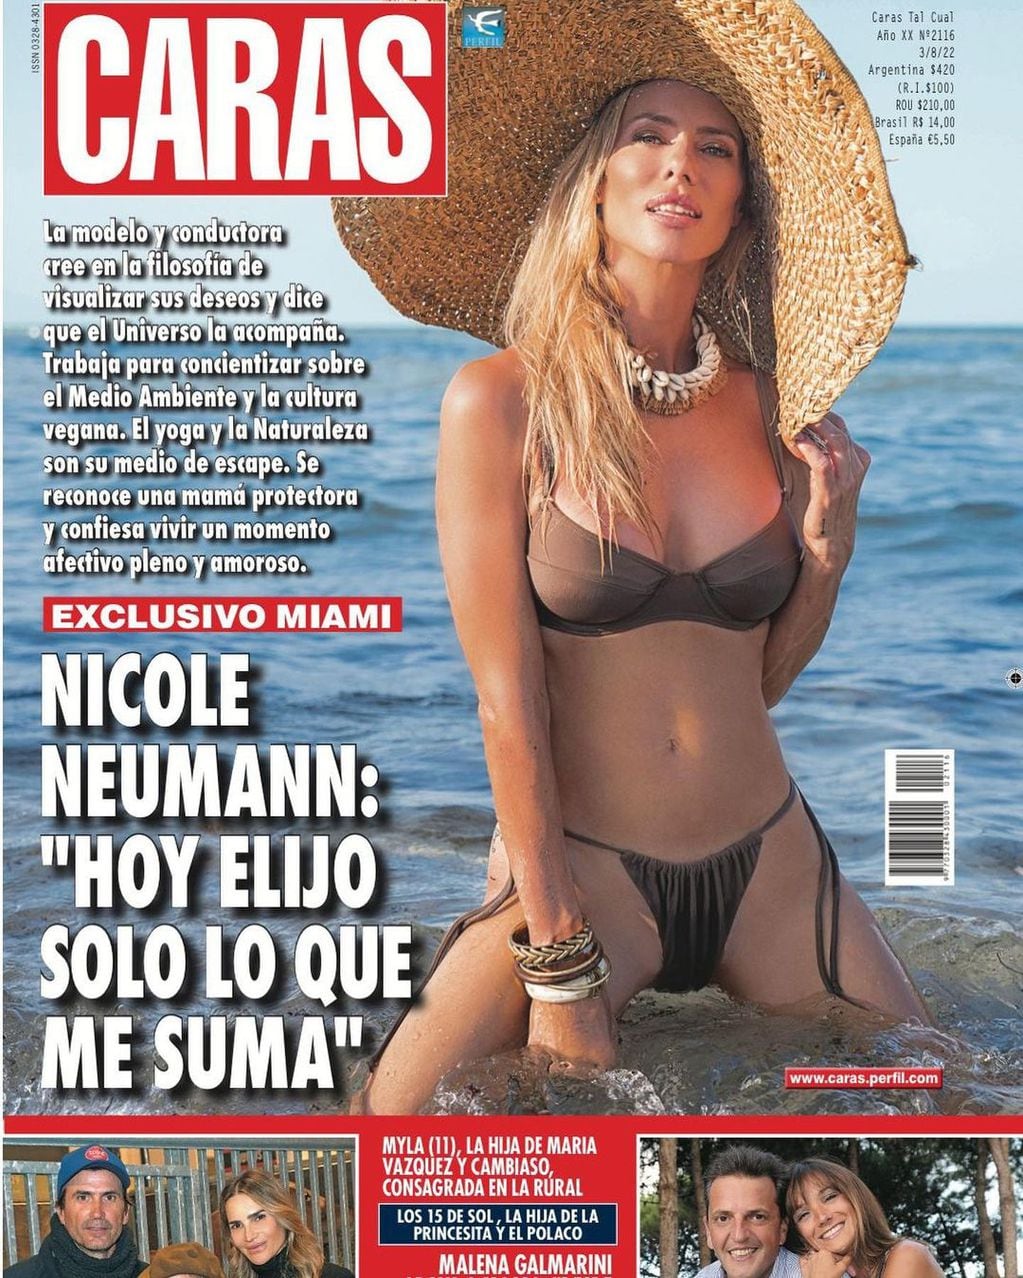 En bikini y jugando entre las olas, Nicole Neumann fue portada de la revista Caras.